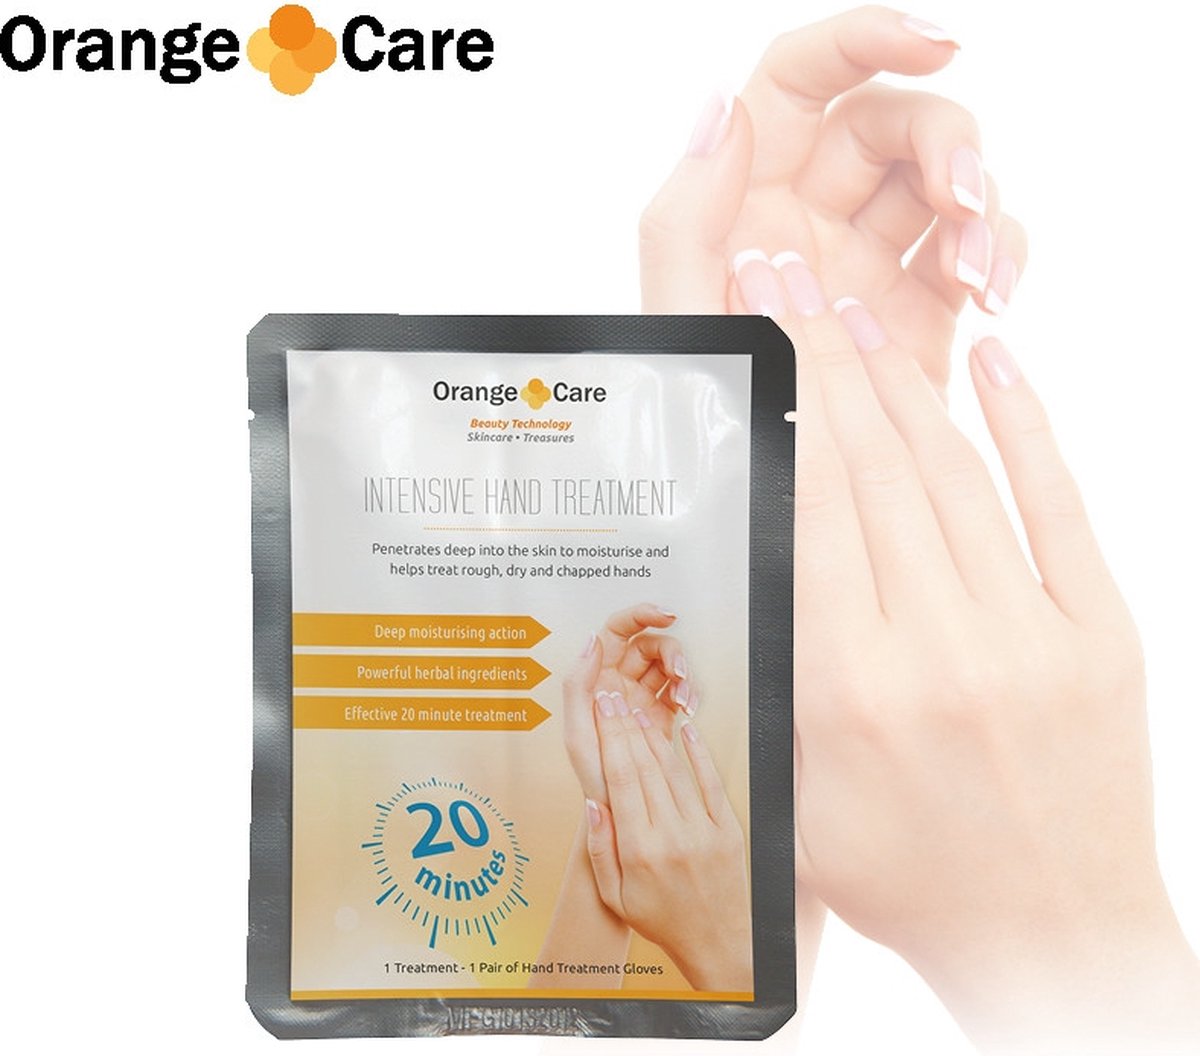 Orange Care, Intensive Hand Treatment - Handmasker - Handverzorging - Handcreme in Handschoen - Natuurlijke Ingrediënten